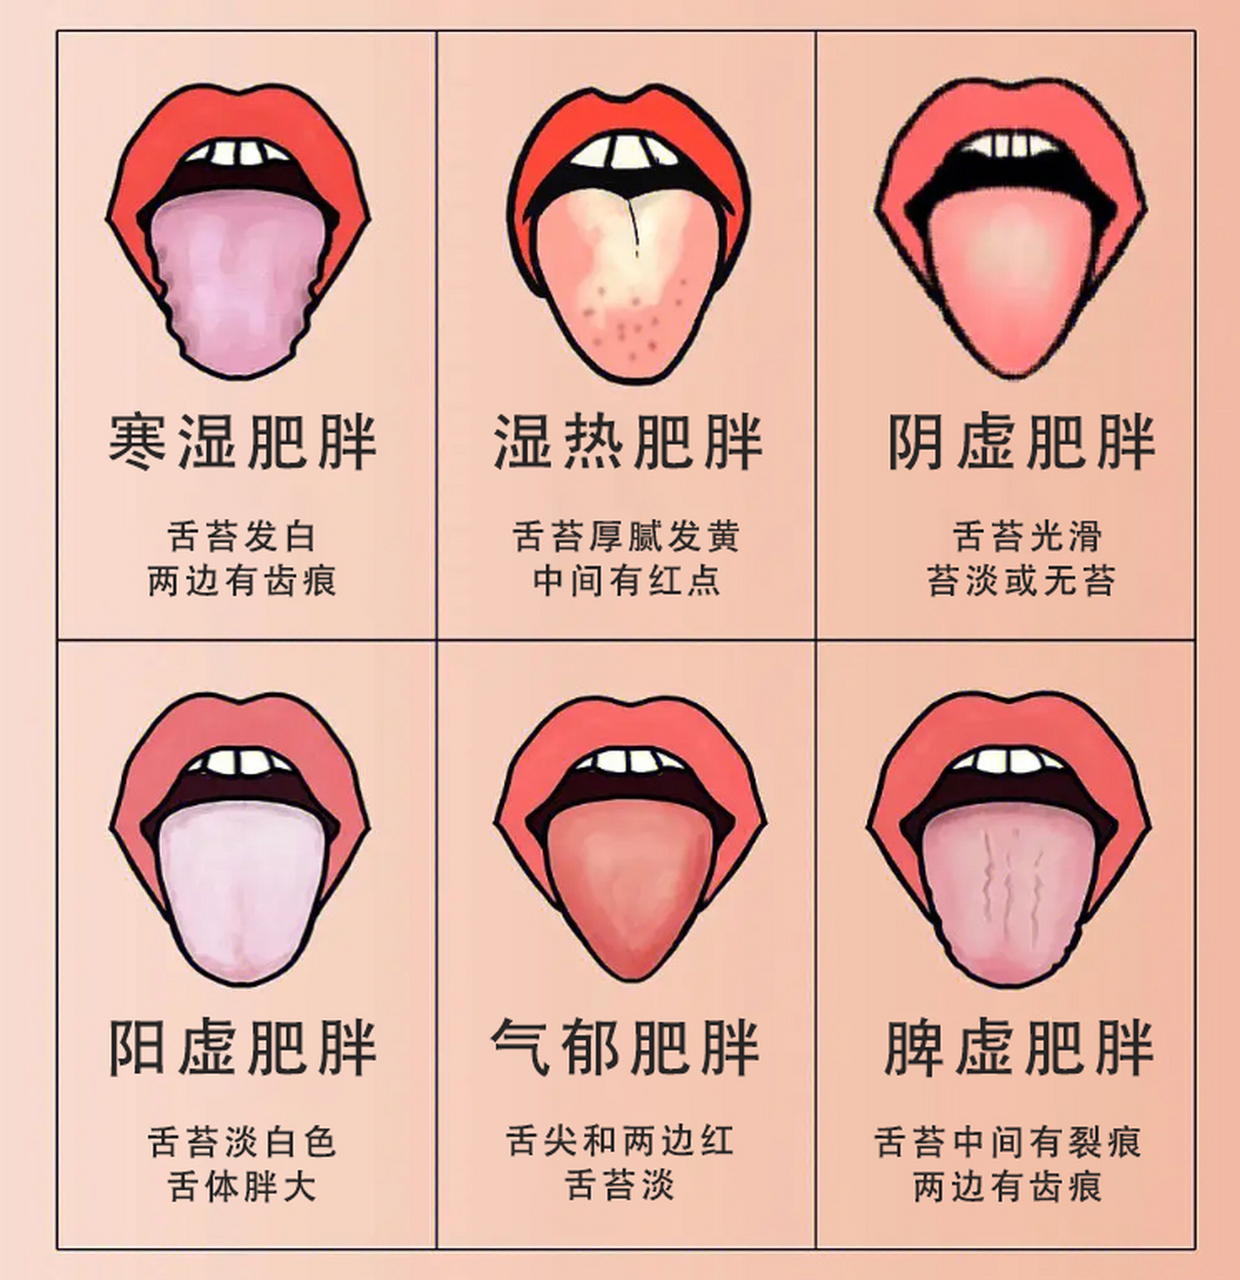 看舌苔辩寒热,对症一方除肥肉  整理出临床肥胖患者常见的四种舌苔,教